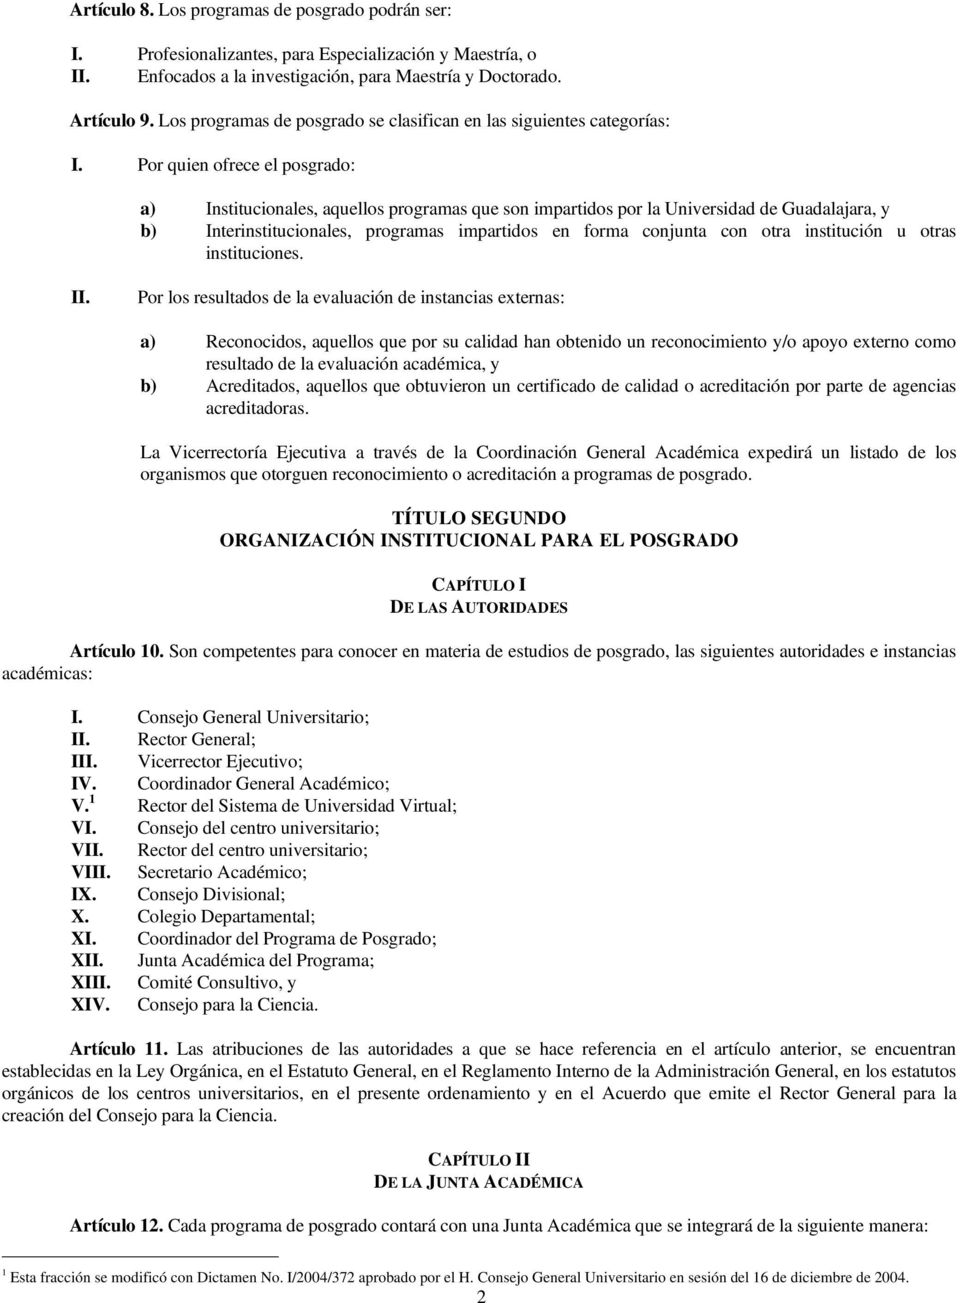 Por quien ofrece el posgrado: a) Institucionales, aquellos programas que son impartidos por la Universidad de Guadalajara, y b) Interinstitucionales, programas impartidos en forma conjunta con otra